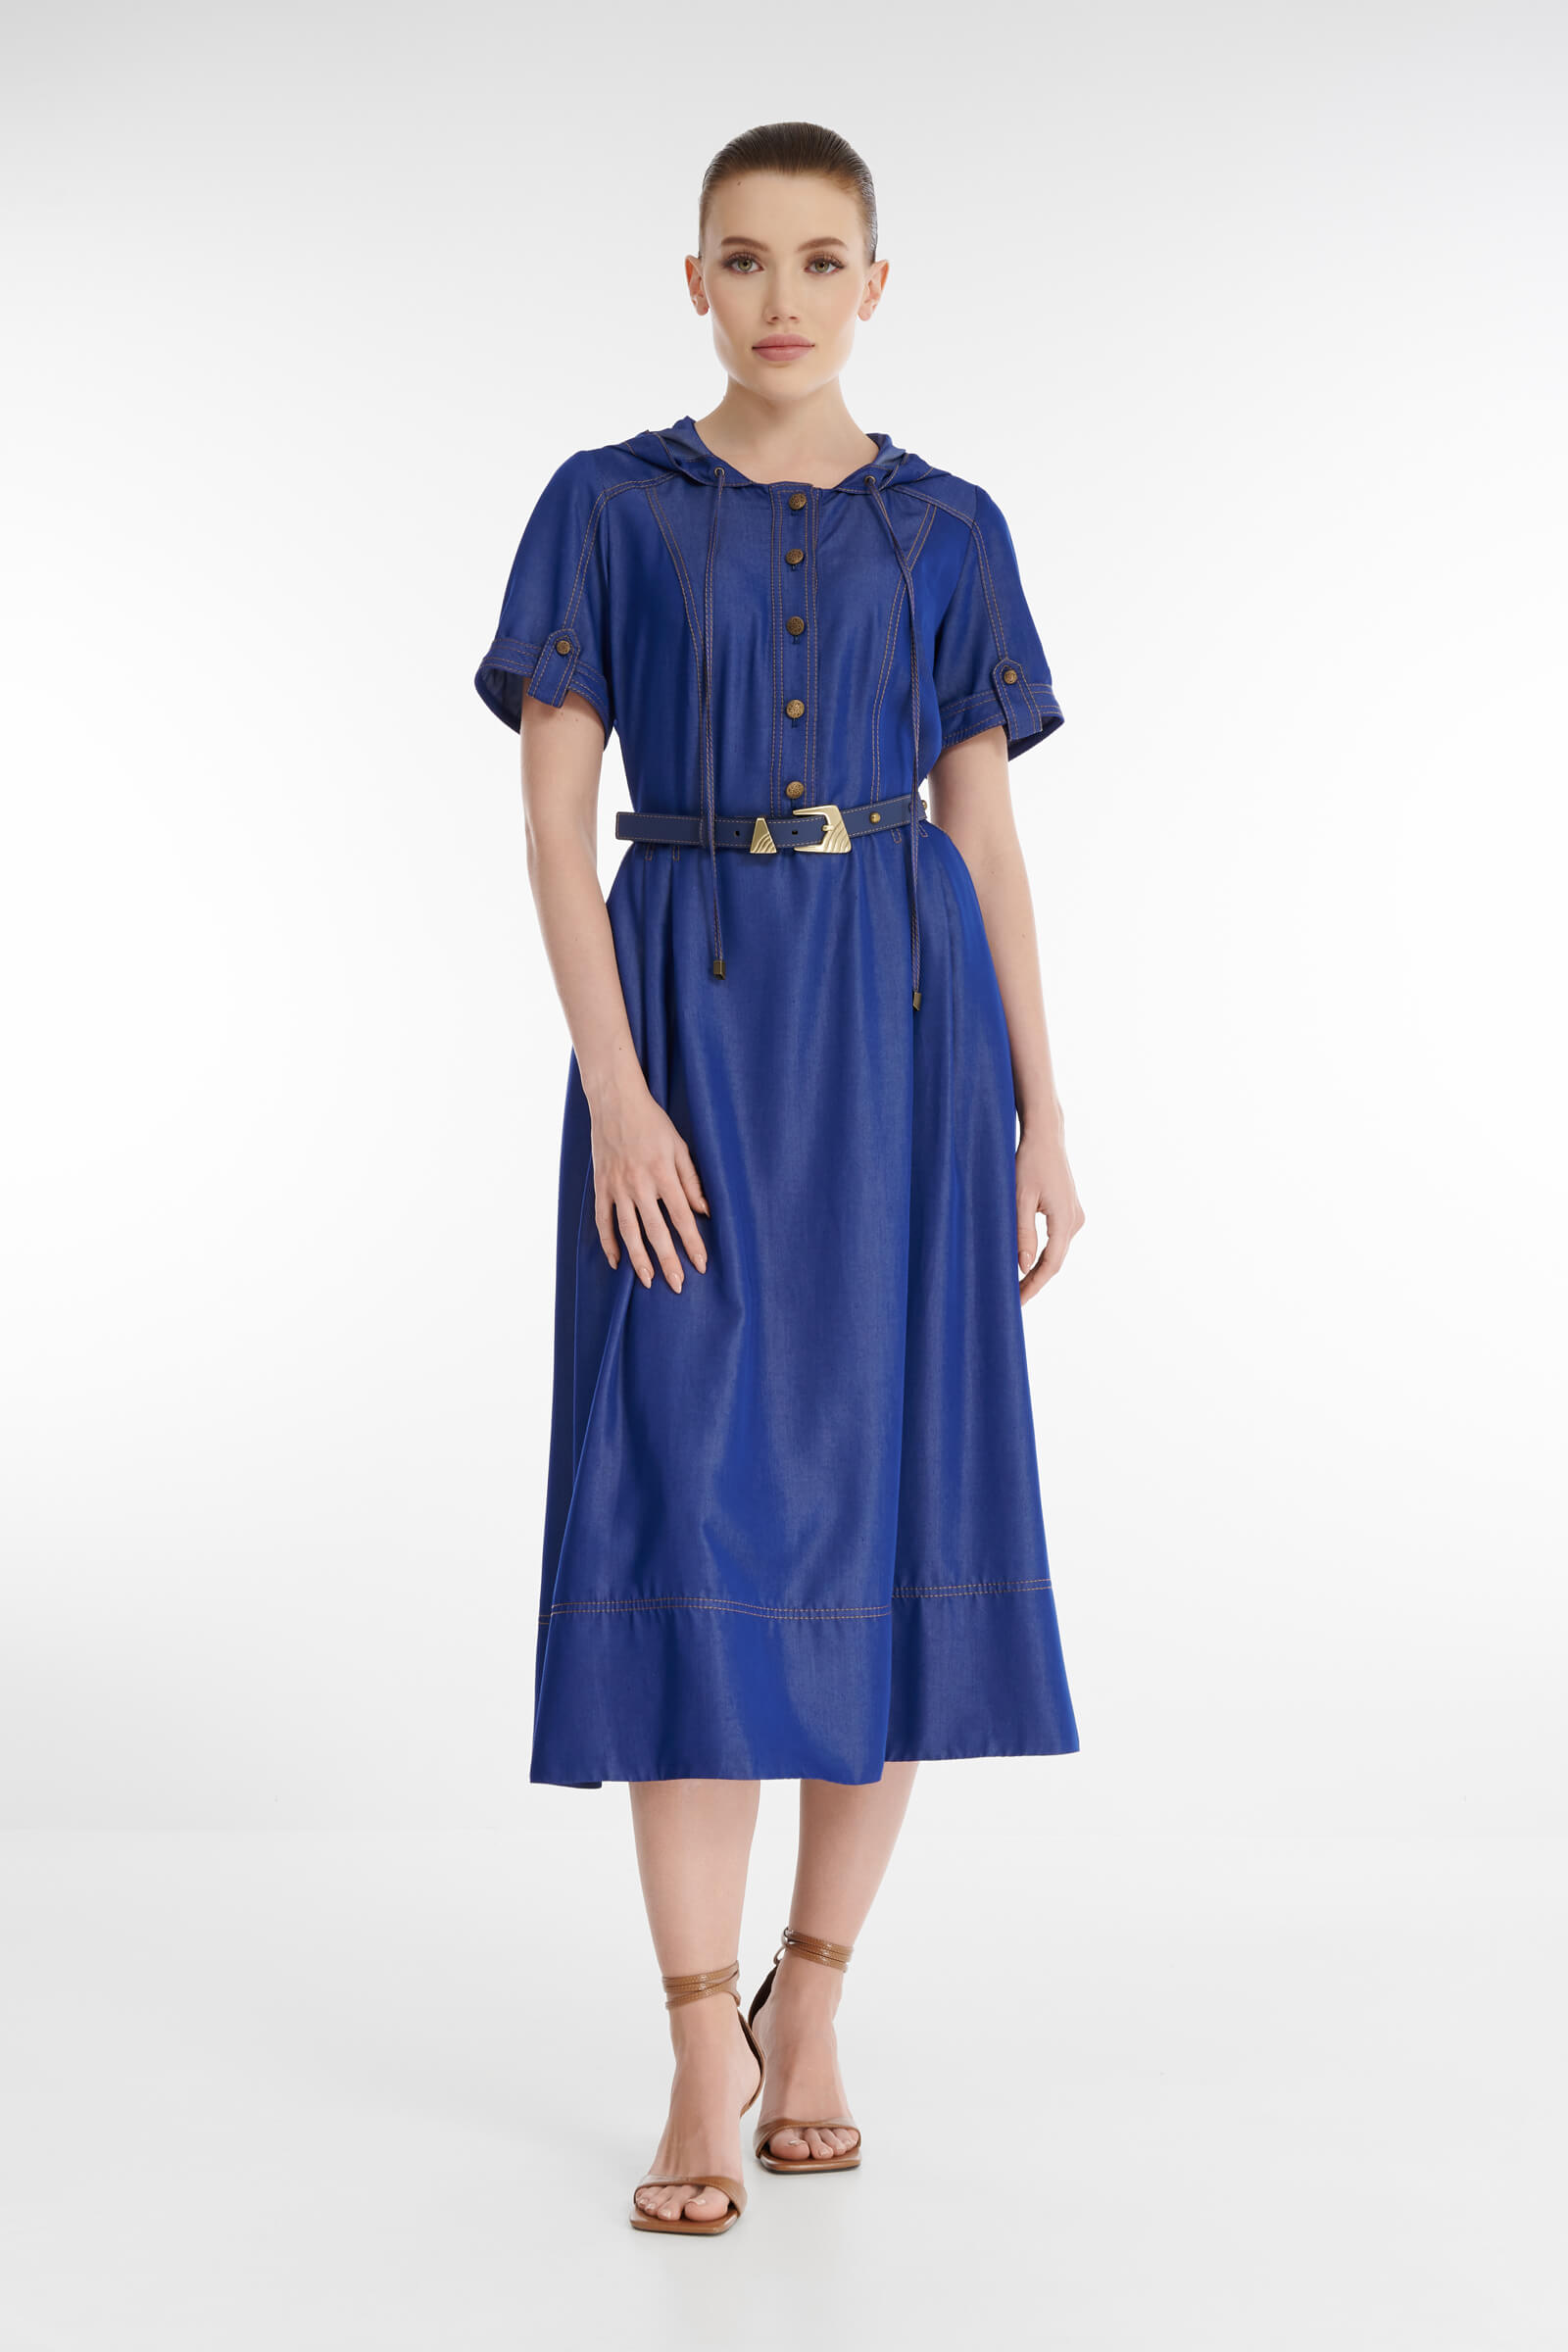 Платье-рубашка с капюшоном Цвет Синий